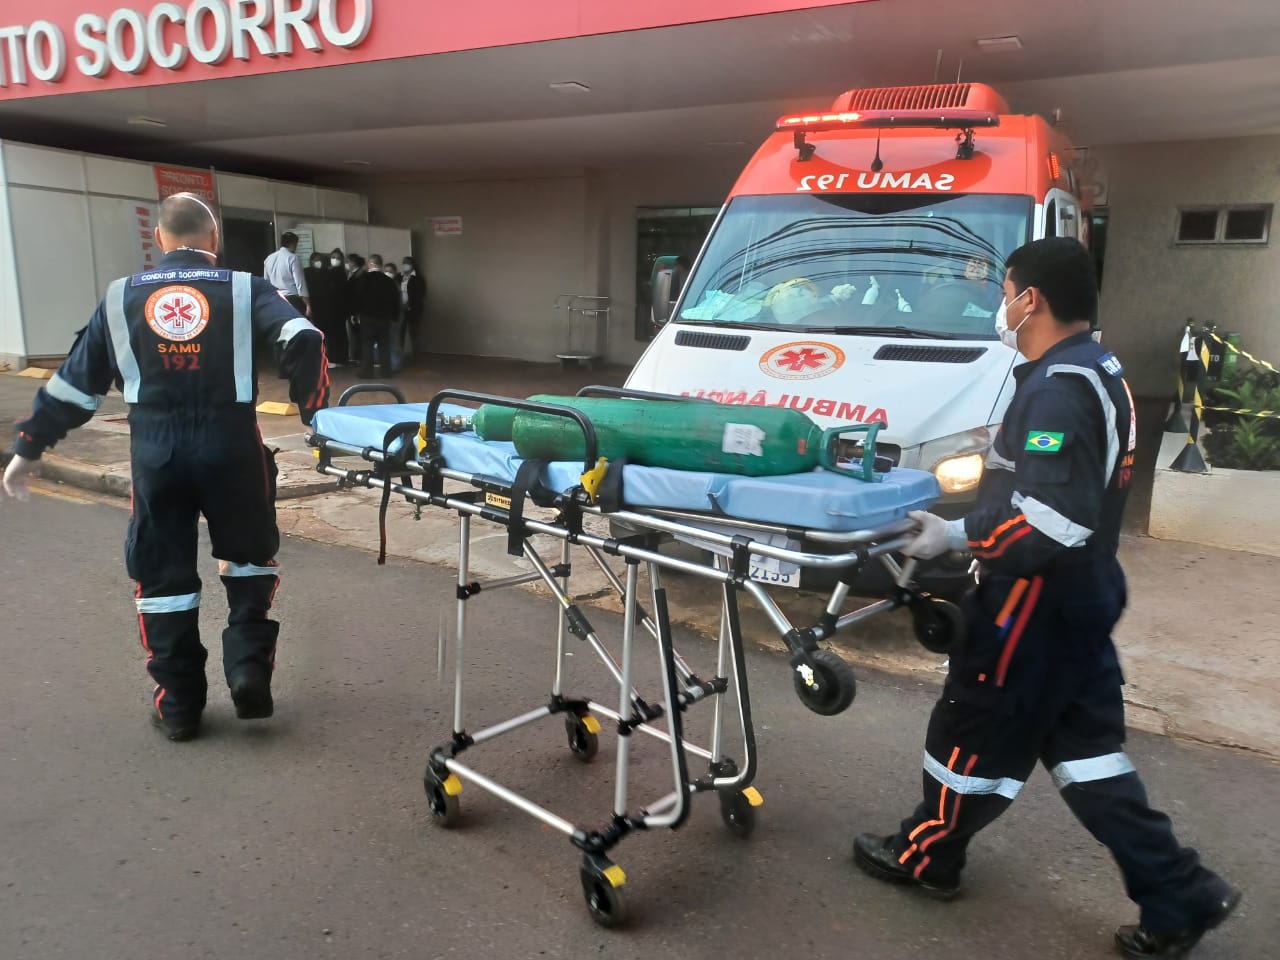 Secretário de Saúde age rápido para salvar vidas no Hospital Paraná